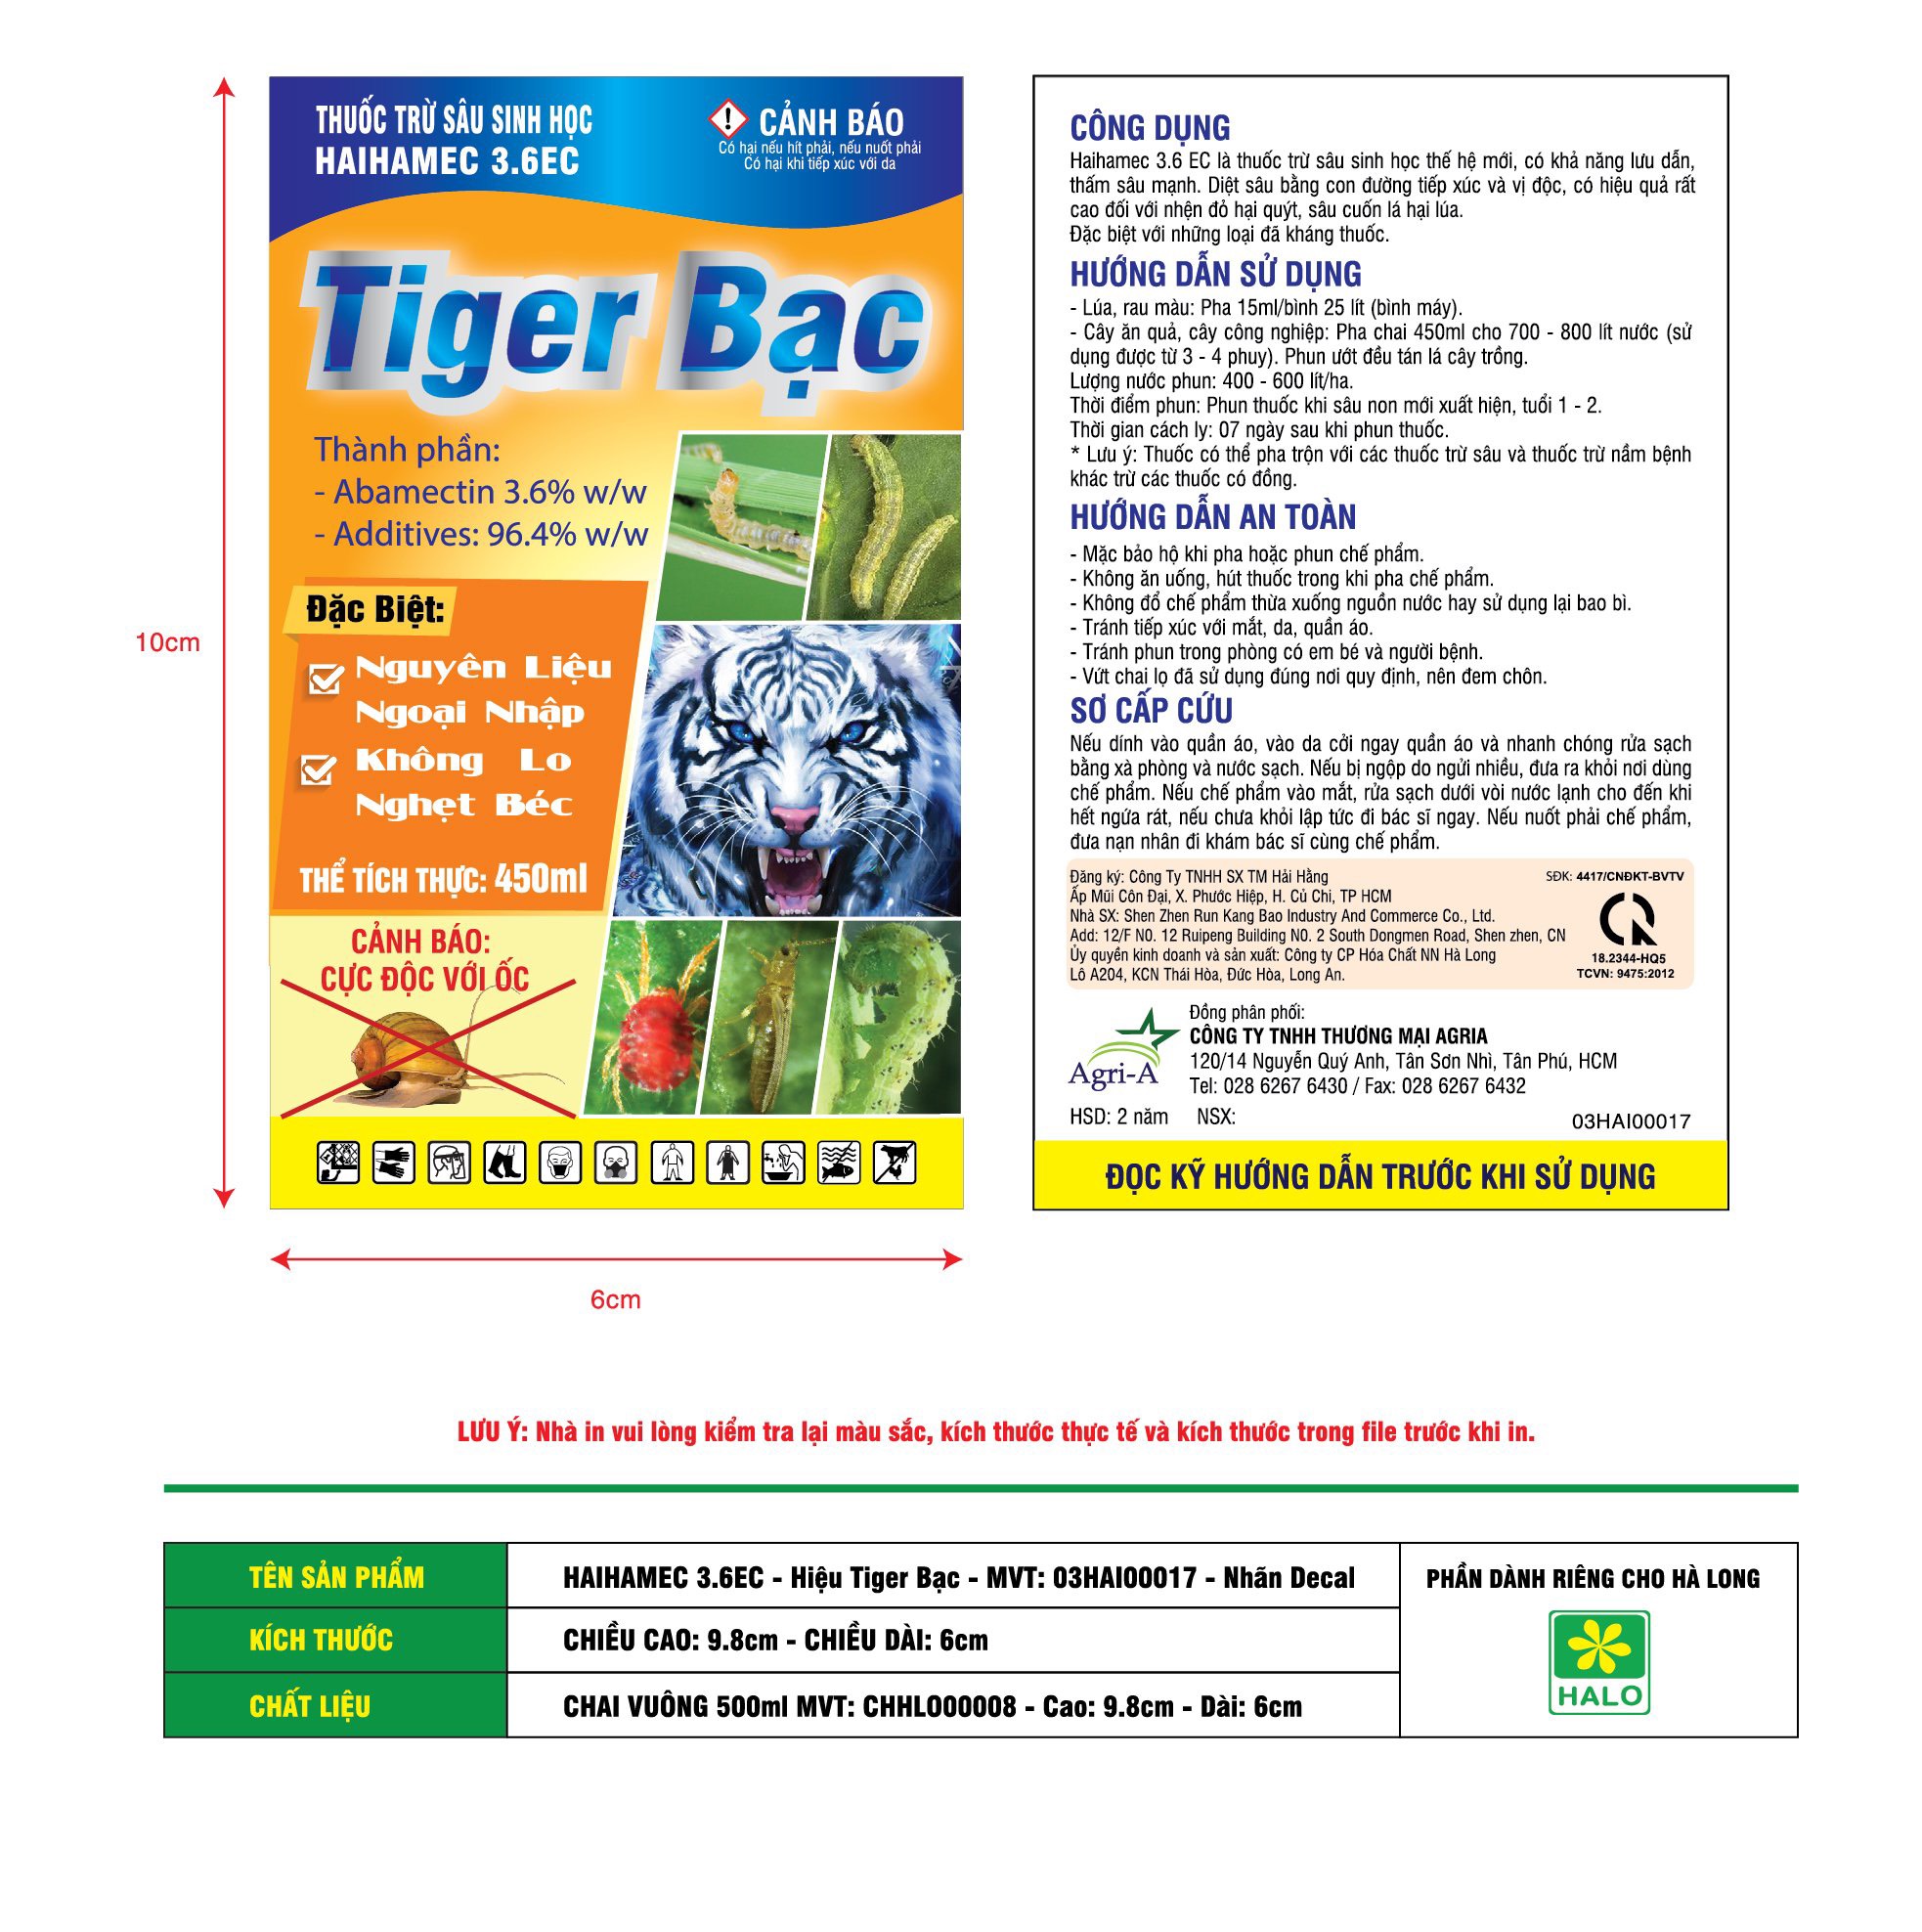 THUỐC TRỪ SÂU SINH HỌC HAIHAMEC 3.6EC Tiger Bạc